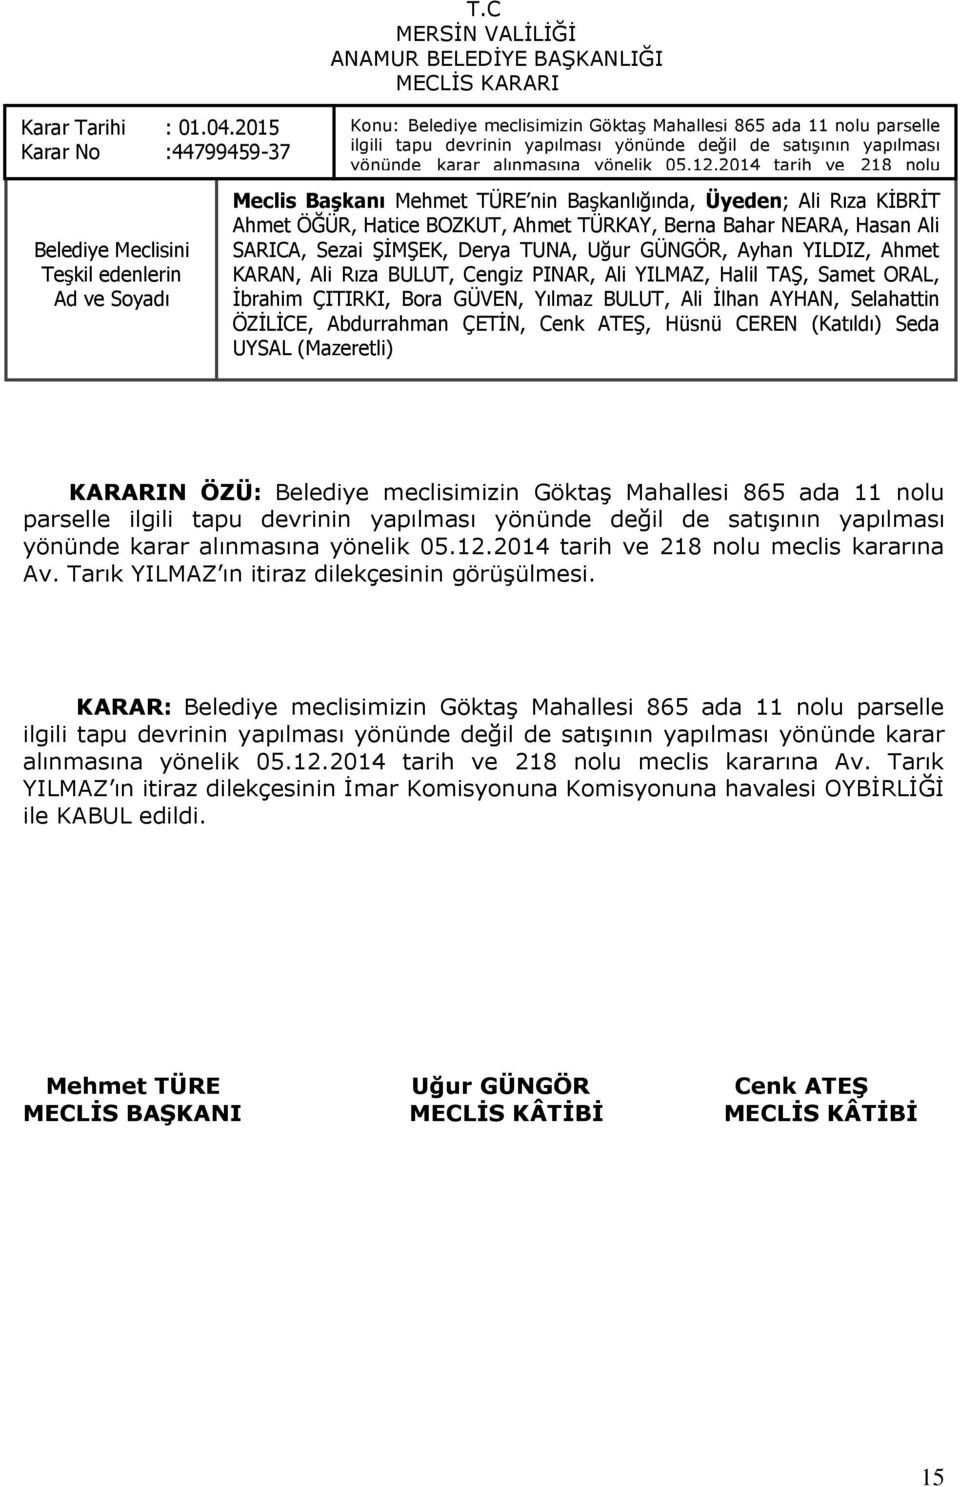 05.12.2014 tarih ve 218 nolu meclis kararına Av. Tarık YILMAZ ın itiraz Ahmet ÖĞÜR, dilekçesinin Hatice BOZKUT, görüģülmesi.